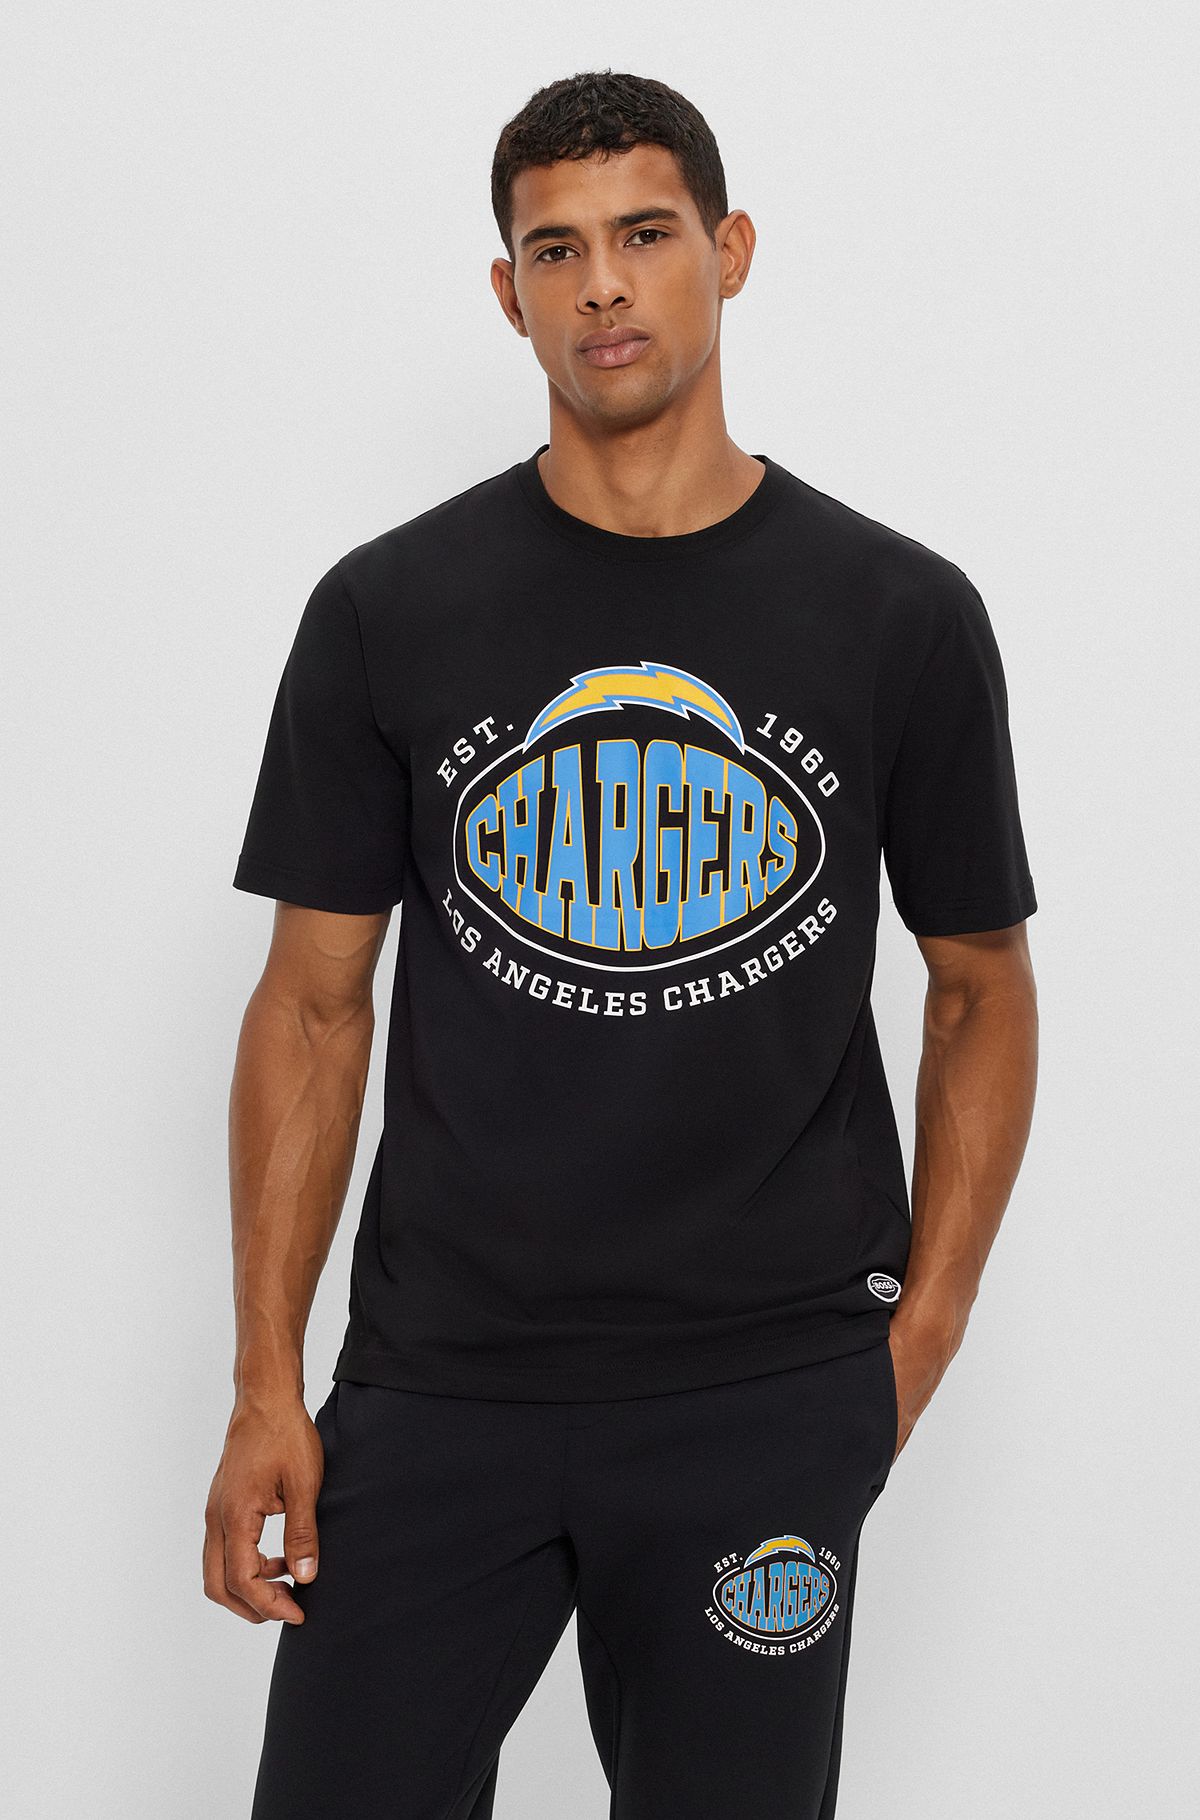  T-shirt en coton stretch BOSS x NFL avec logo du partenariat, Chargers